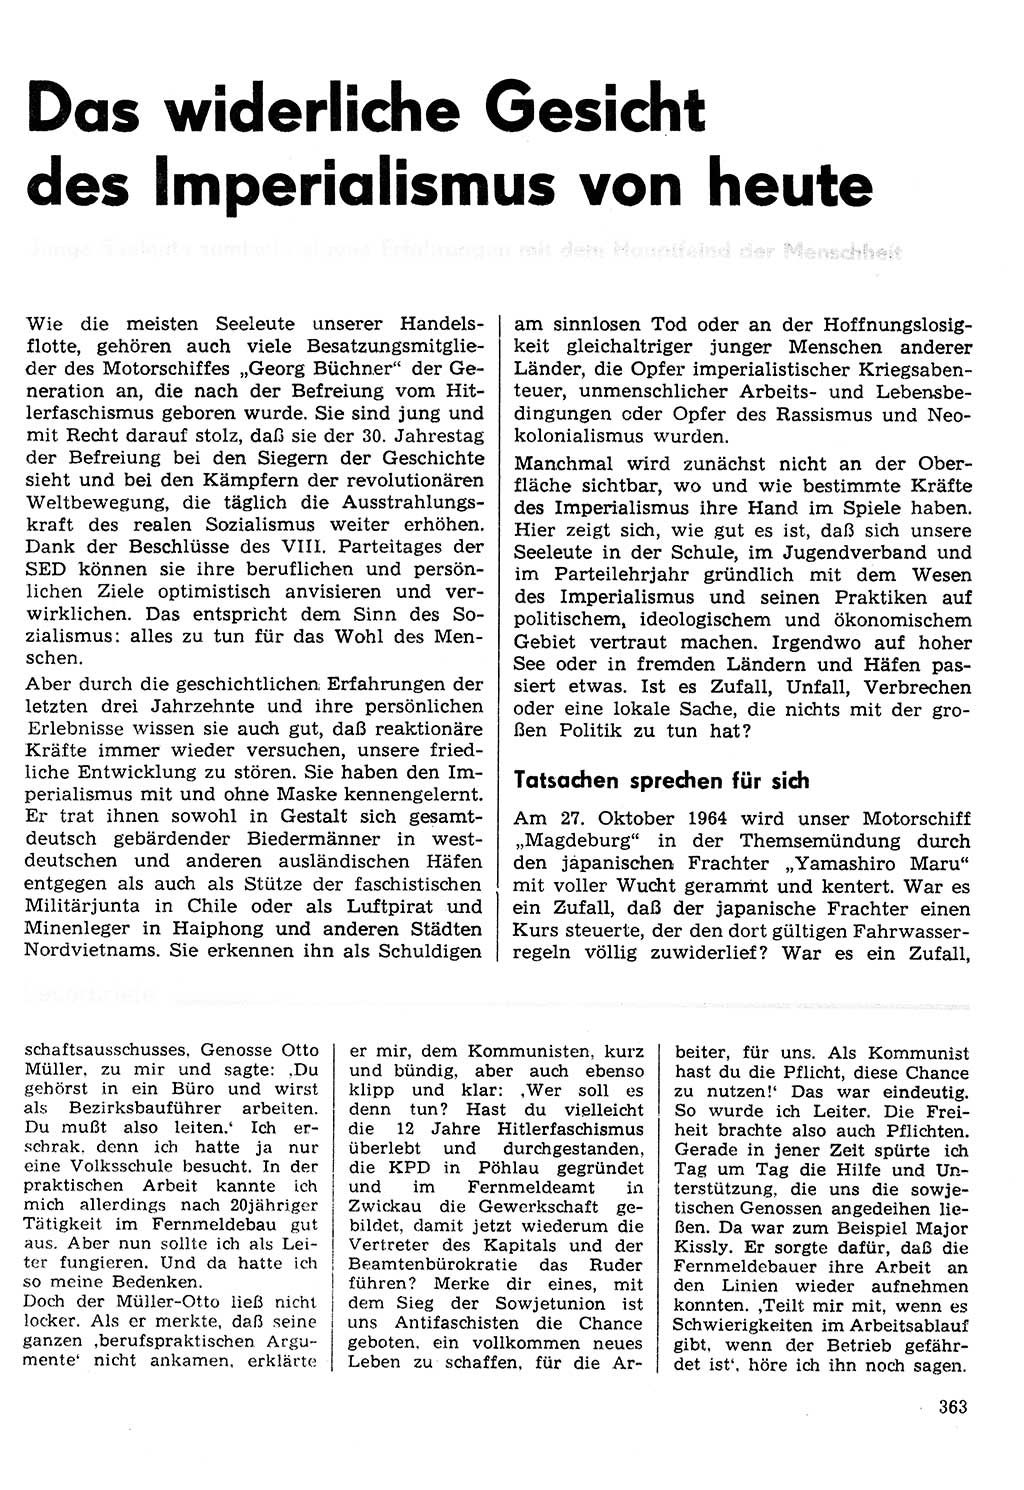 Neuer Weg (NW), Organ des Zentralkomitees (ZK) der SED (Sozialistische Einheitspartei Deutschlands) für Fragen des Parteilebens, 30. Jahrgang [Deutsche Demokratische Republik (DDR)] 1975, Seite 363 (NW ZK SED DDR 1975, S. 363)